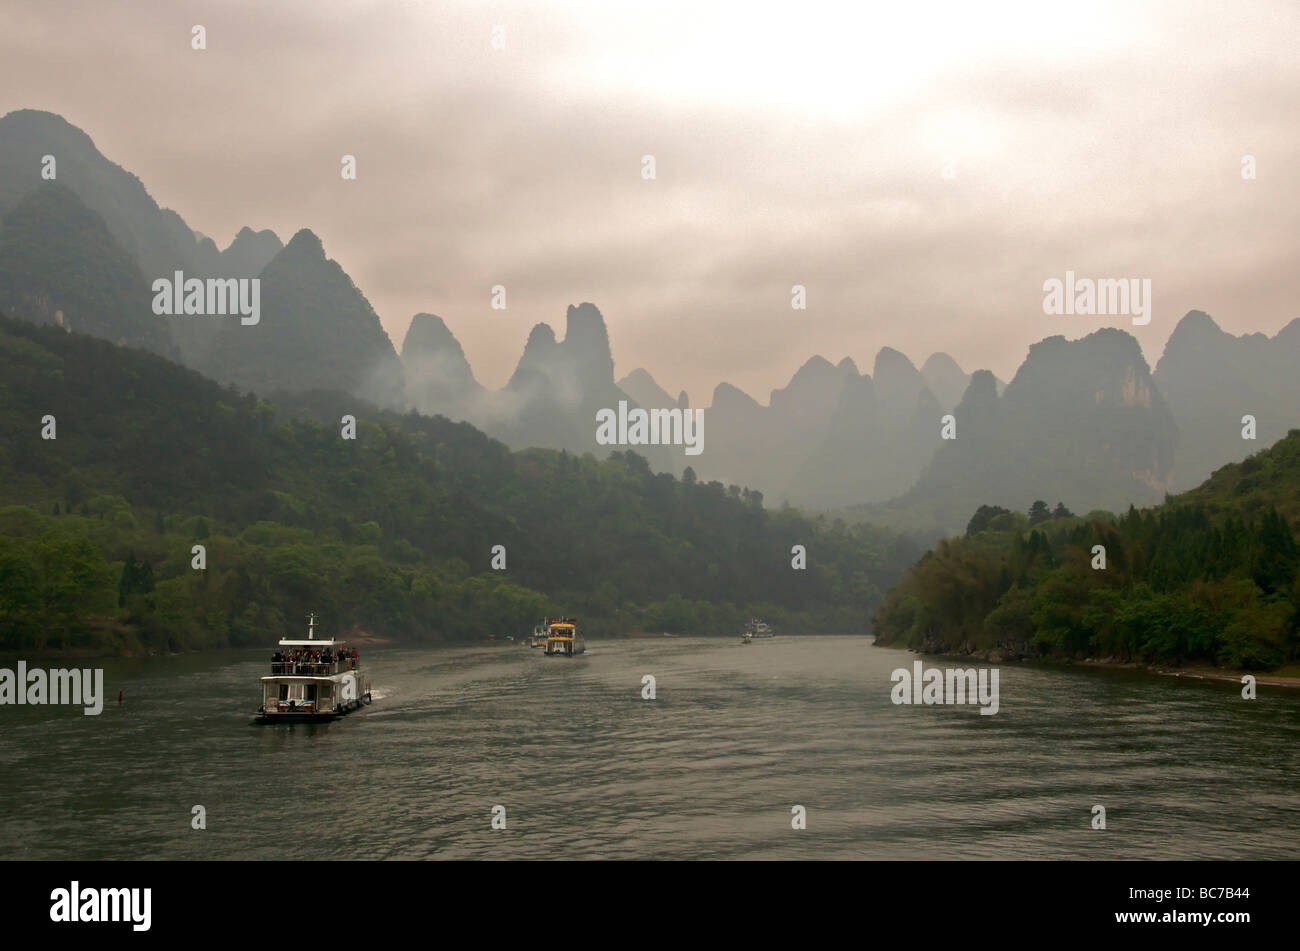 Les touristes Les croisières sur la rivière Li entre Guilin et Yangshuo au milieu des paysages karstiques Chine Guanxi Banque D'Images